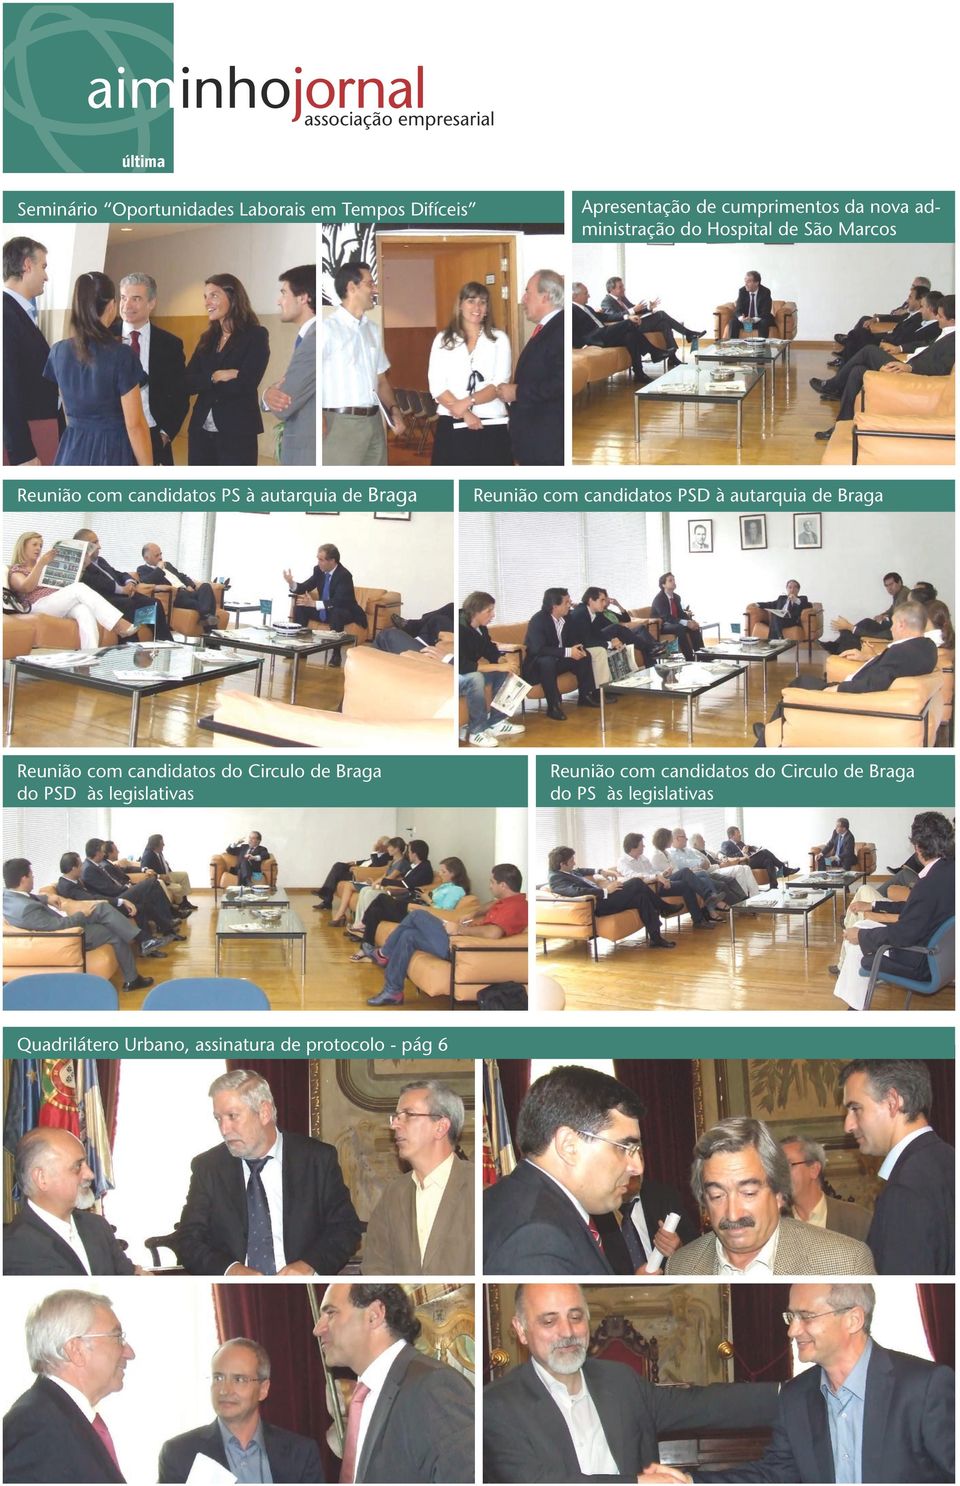 Reunião com candidatos PSD à autarquia de Braga Reunião com candidatos do Circulo de Braga do PSD às